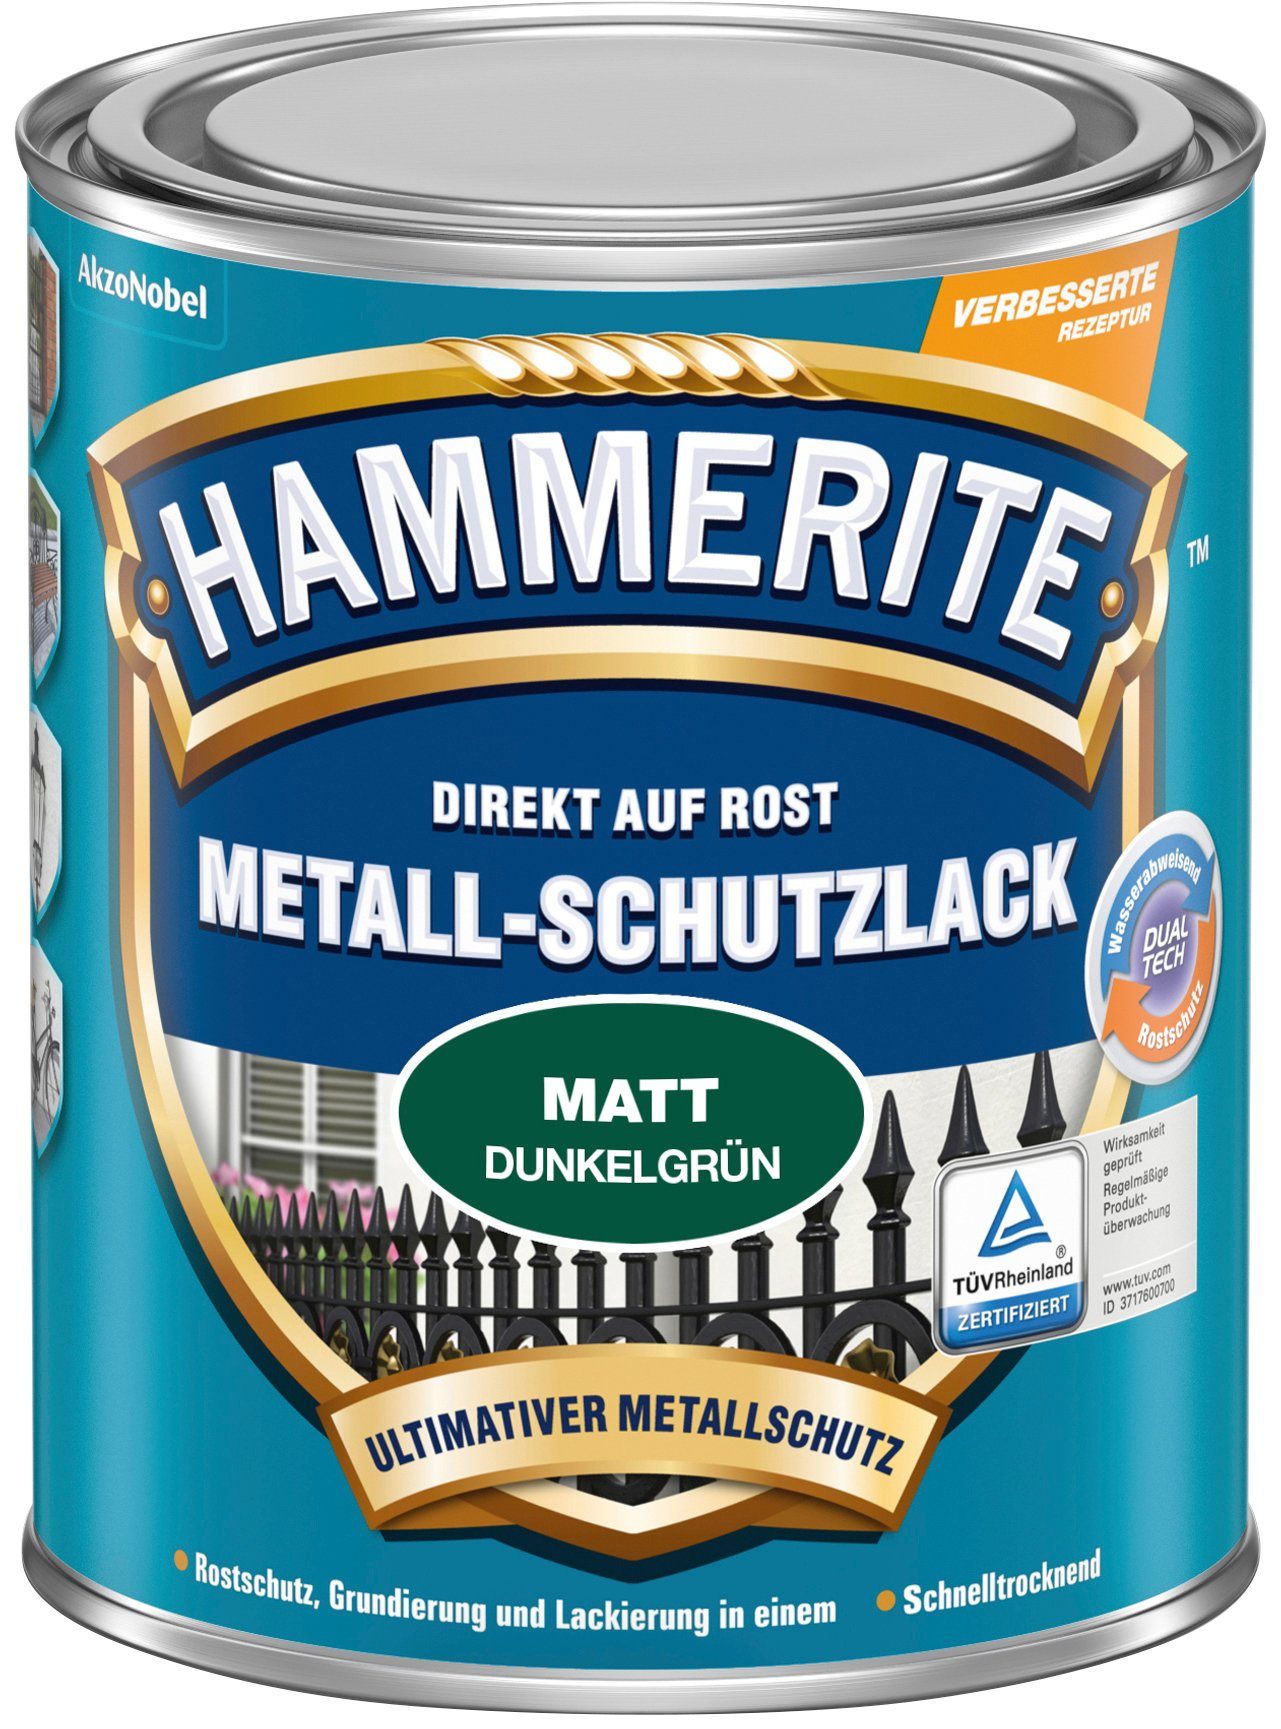 DIREKT 0,75 ROST, Liter matt, AUF Matt Metallschutzlack Dunkelgrün Hammerite 